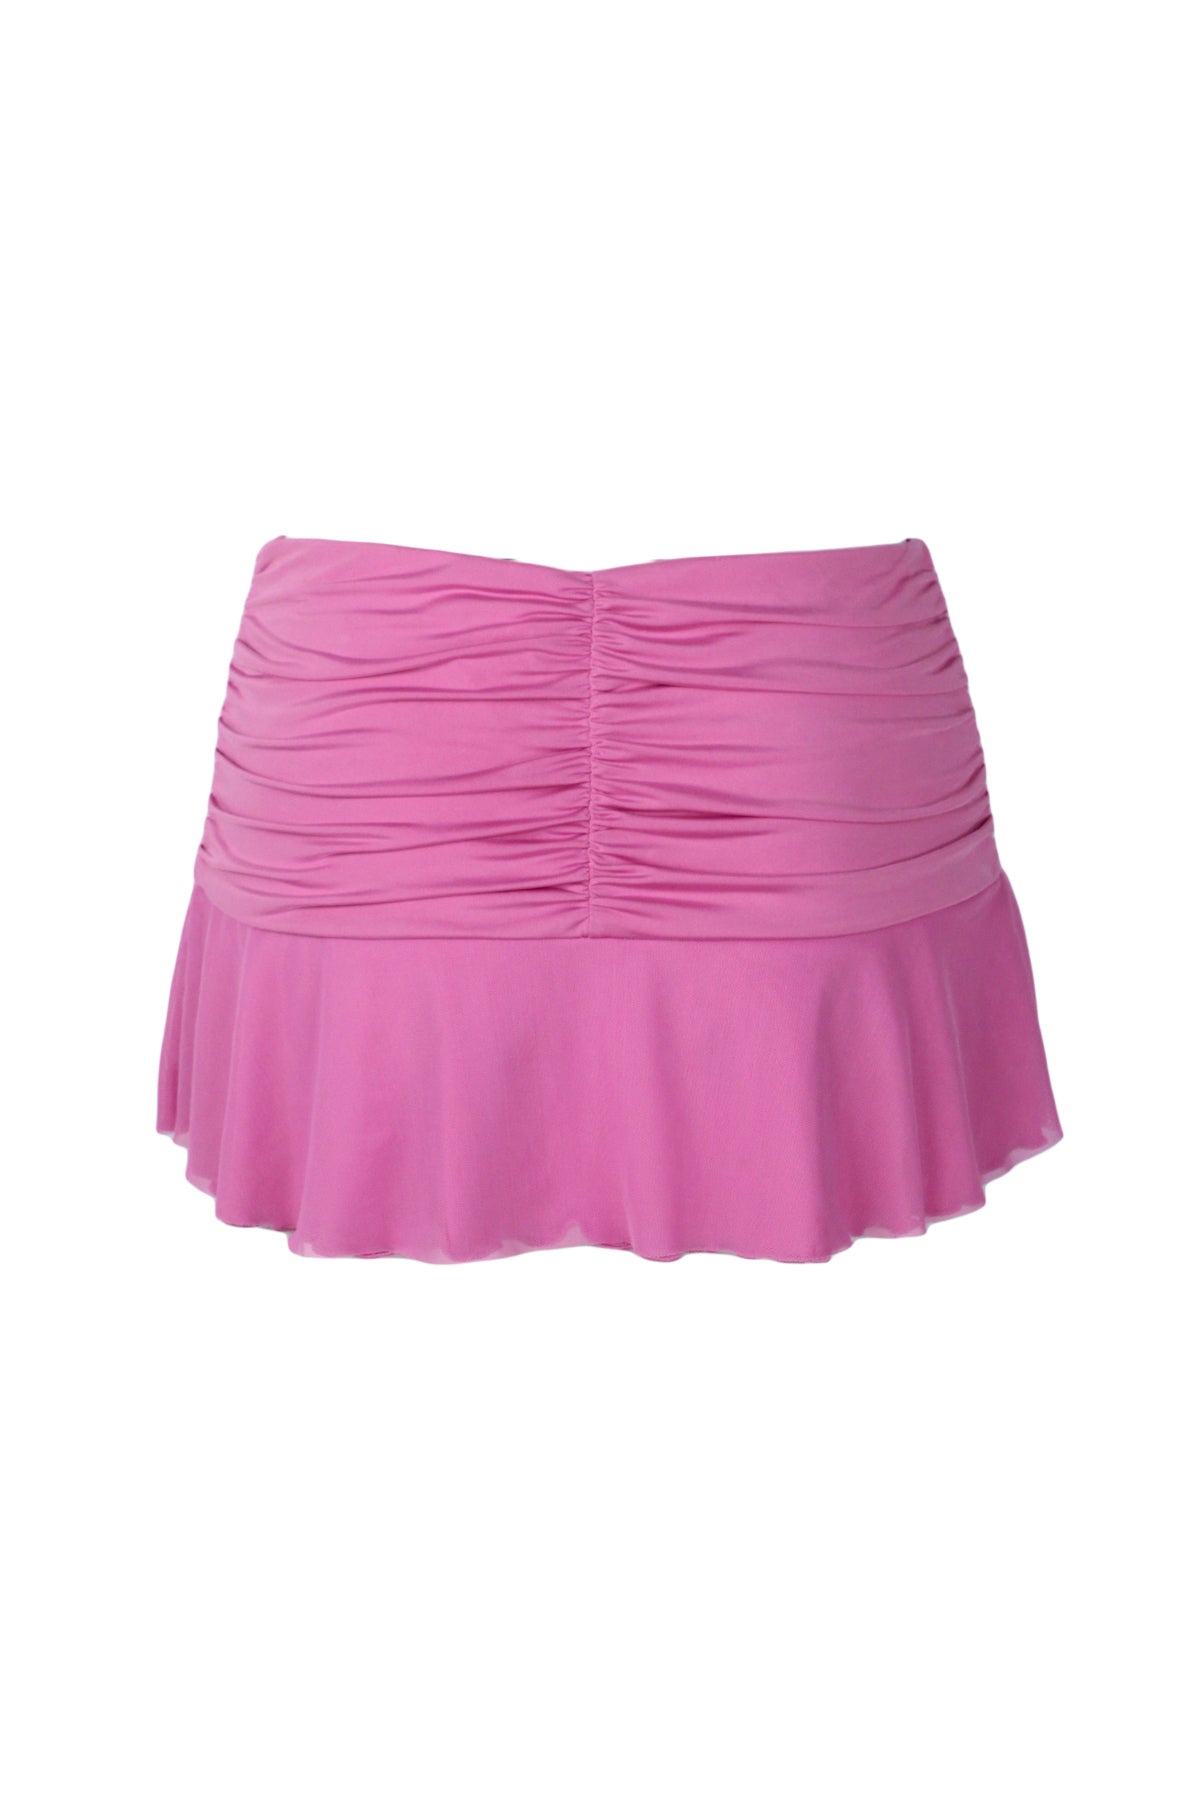 back of pink mini skirt.  